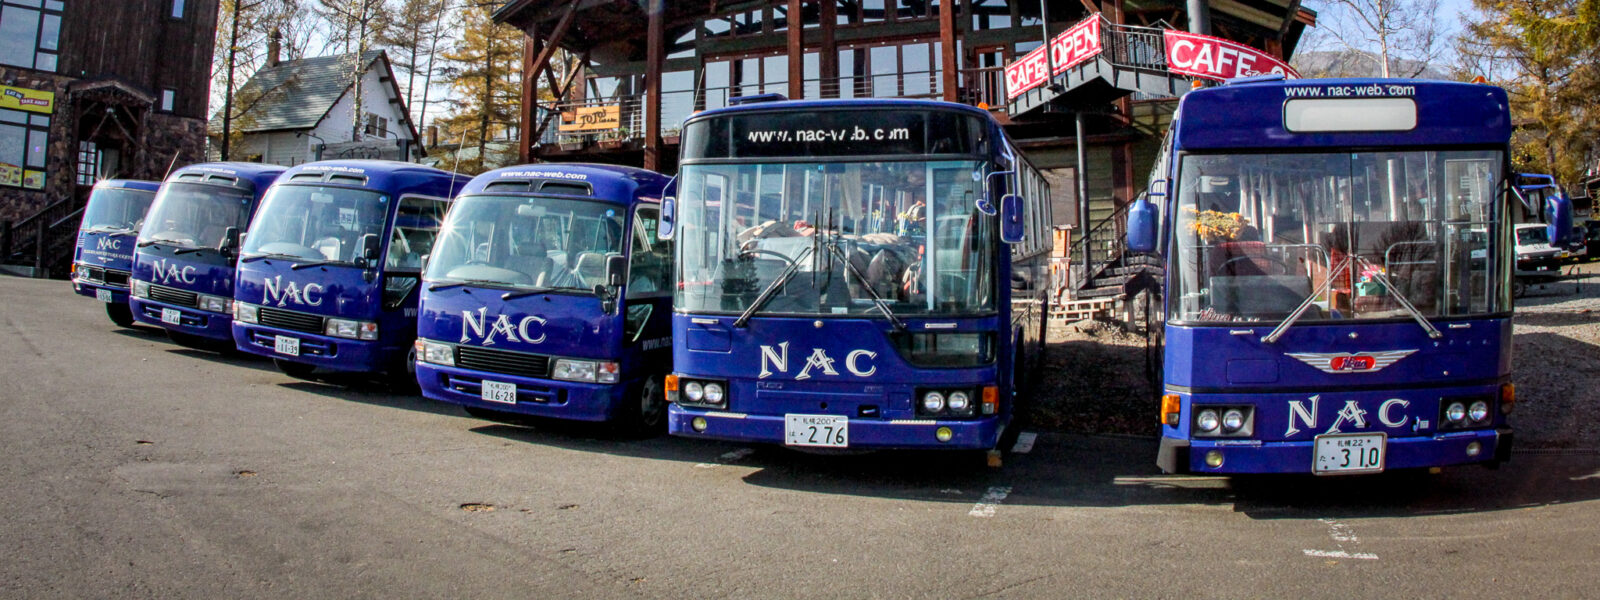 NAC青バス